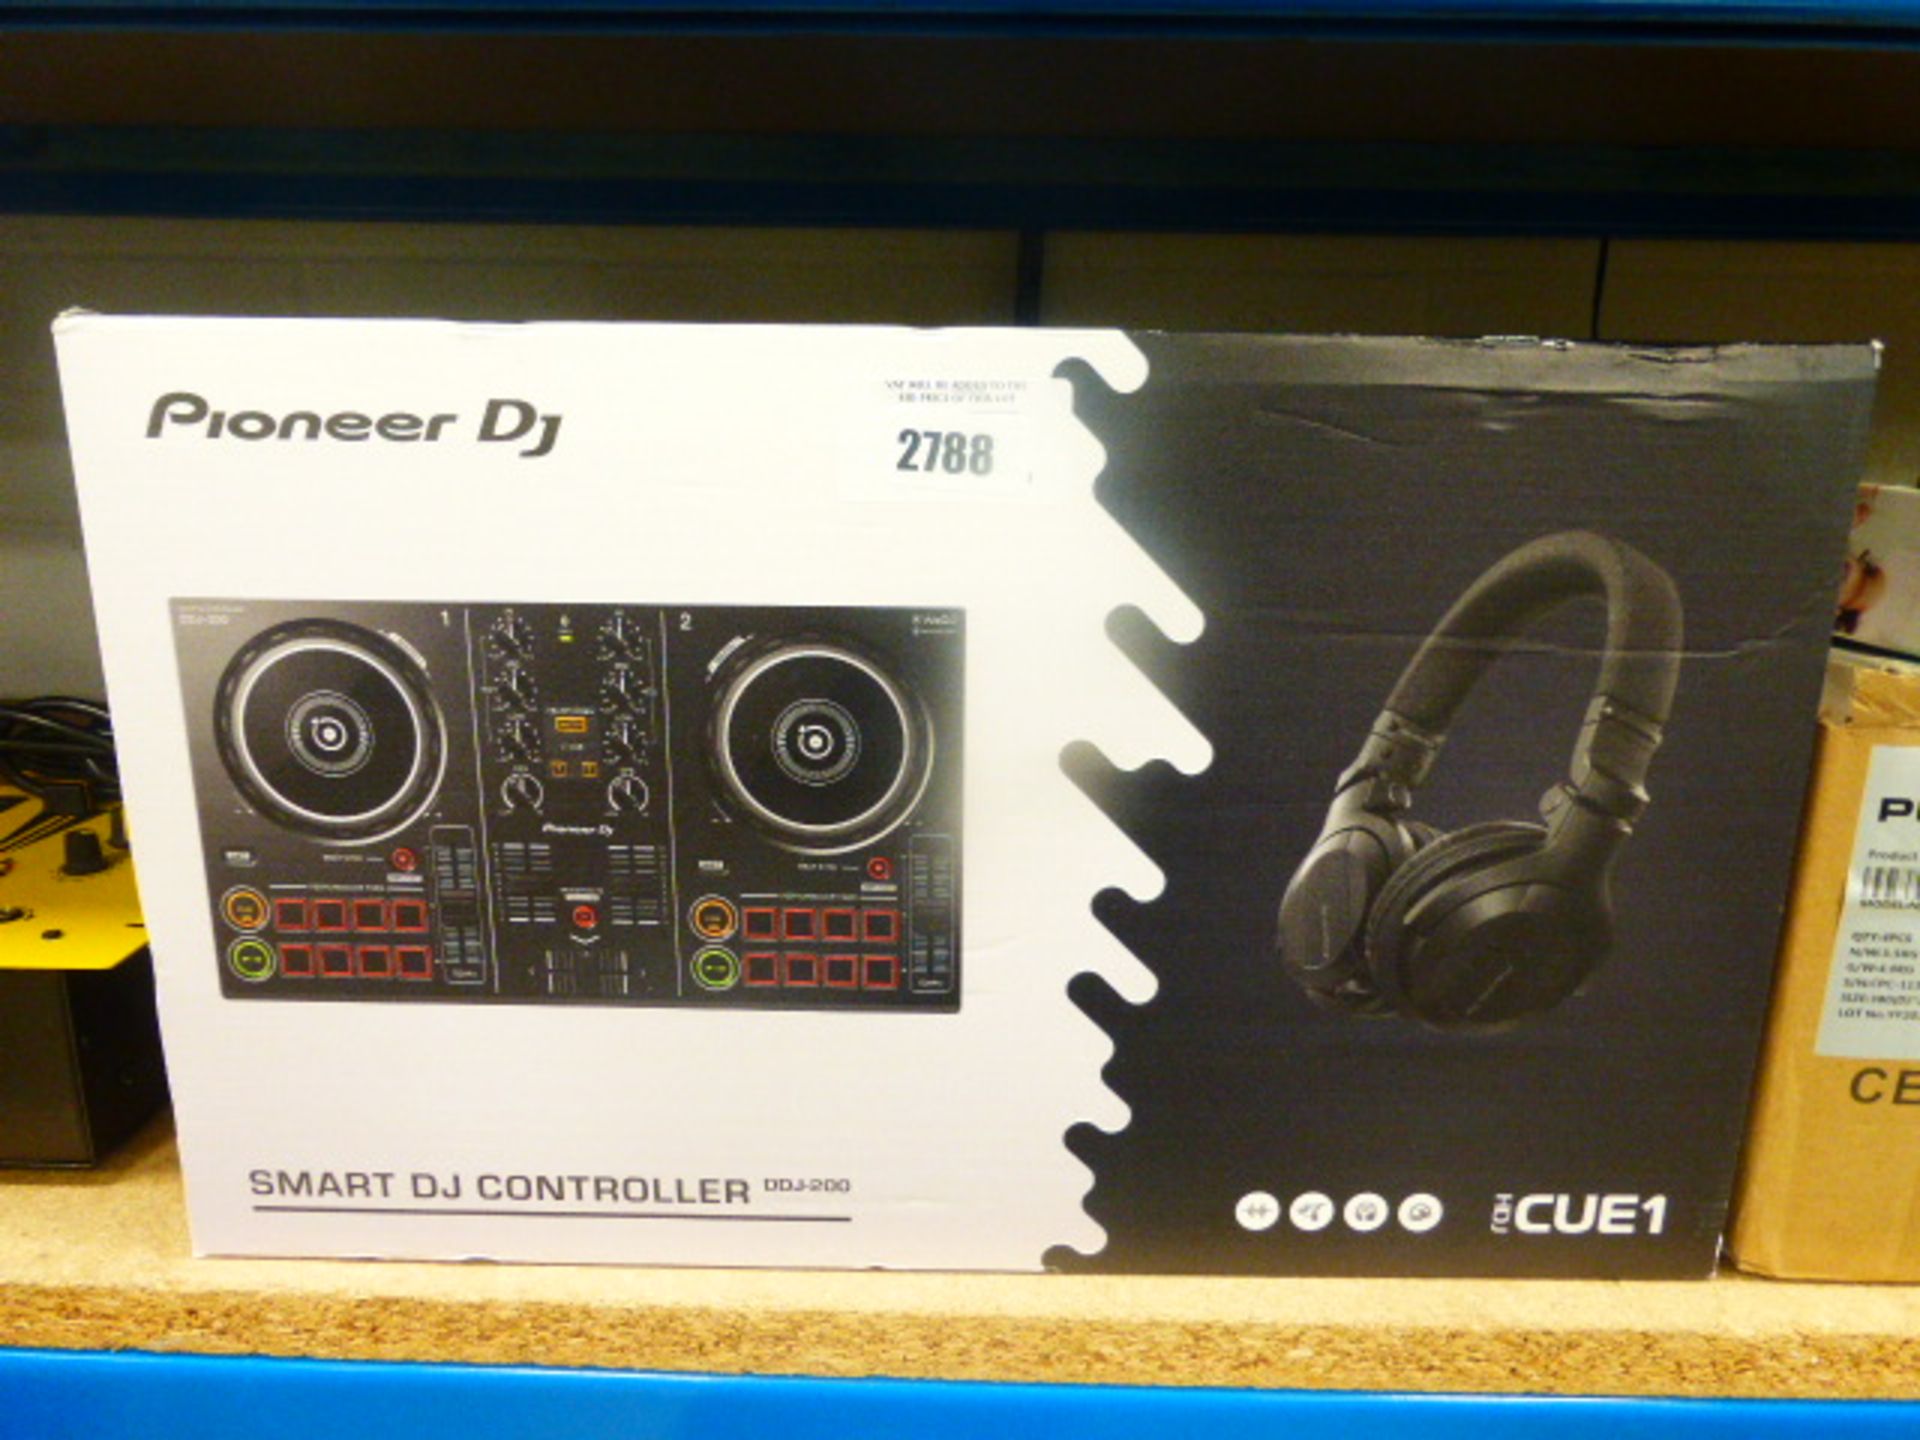 Pioneer smart DJ unit model DDJ-200 with box